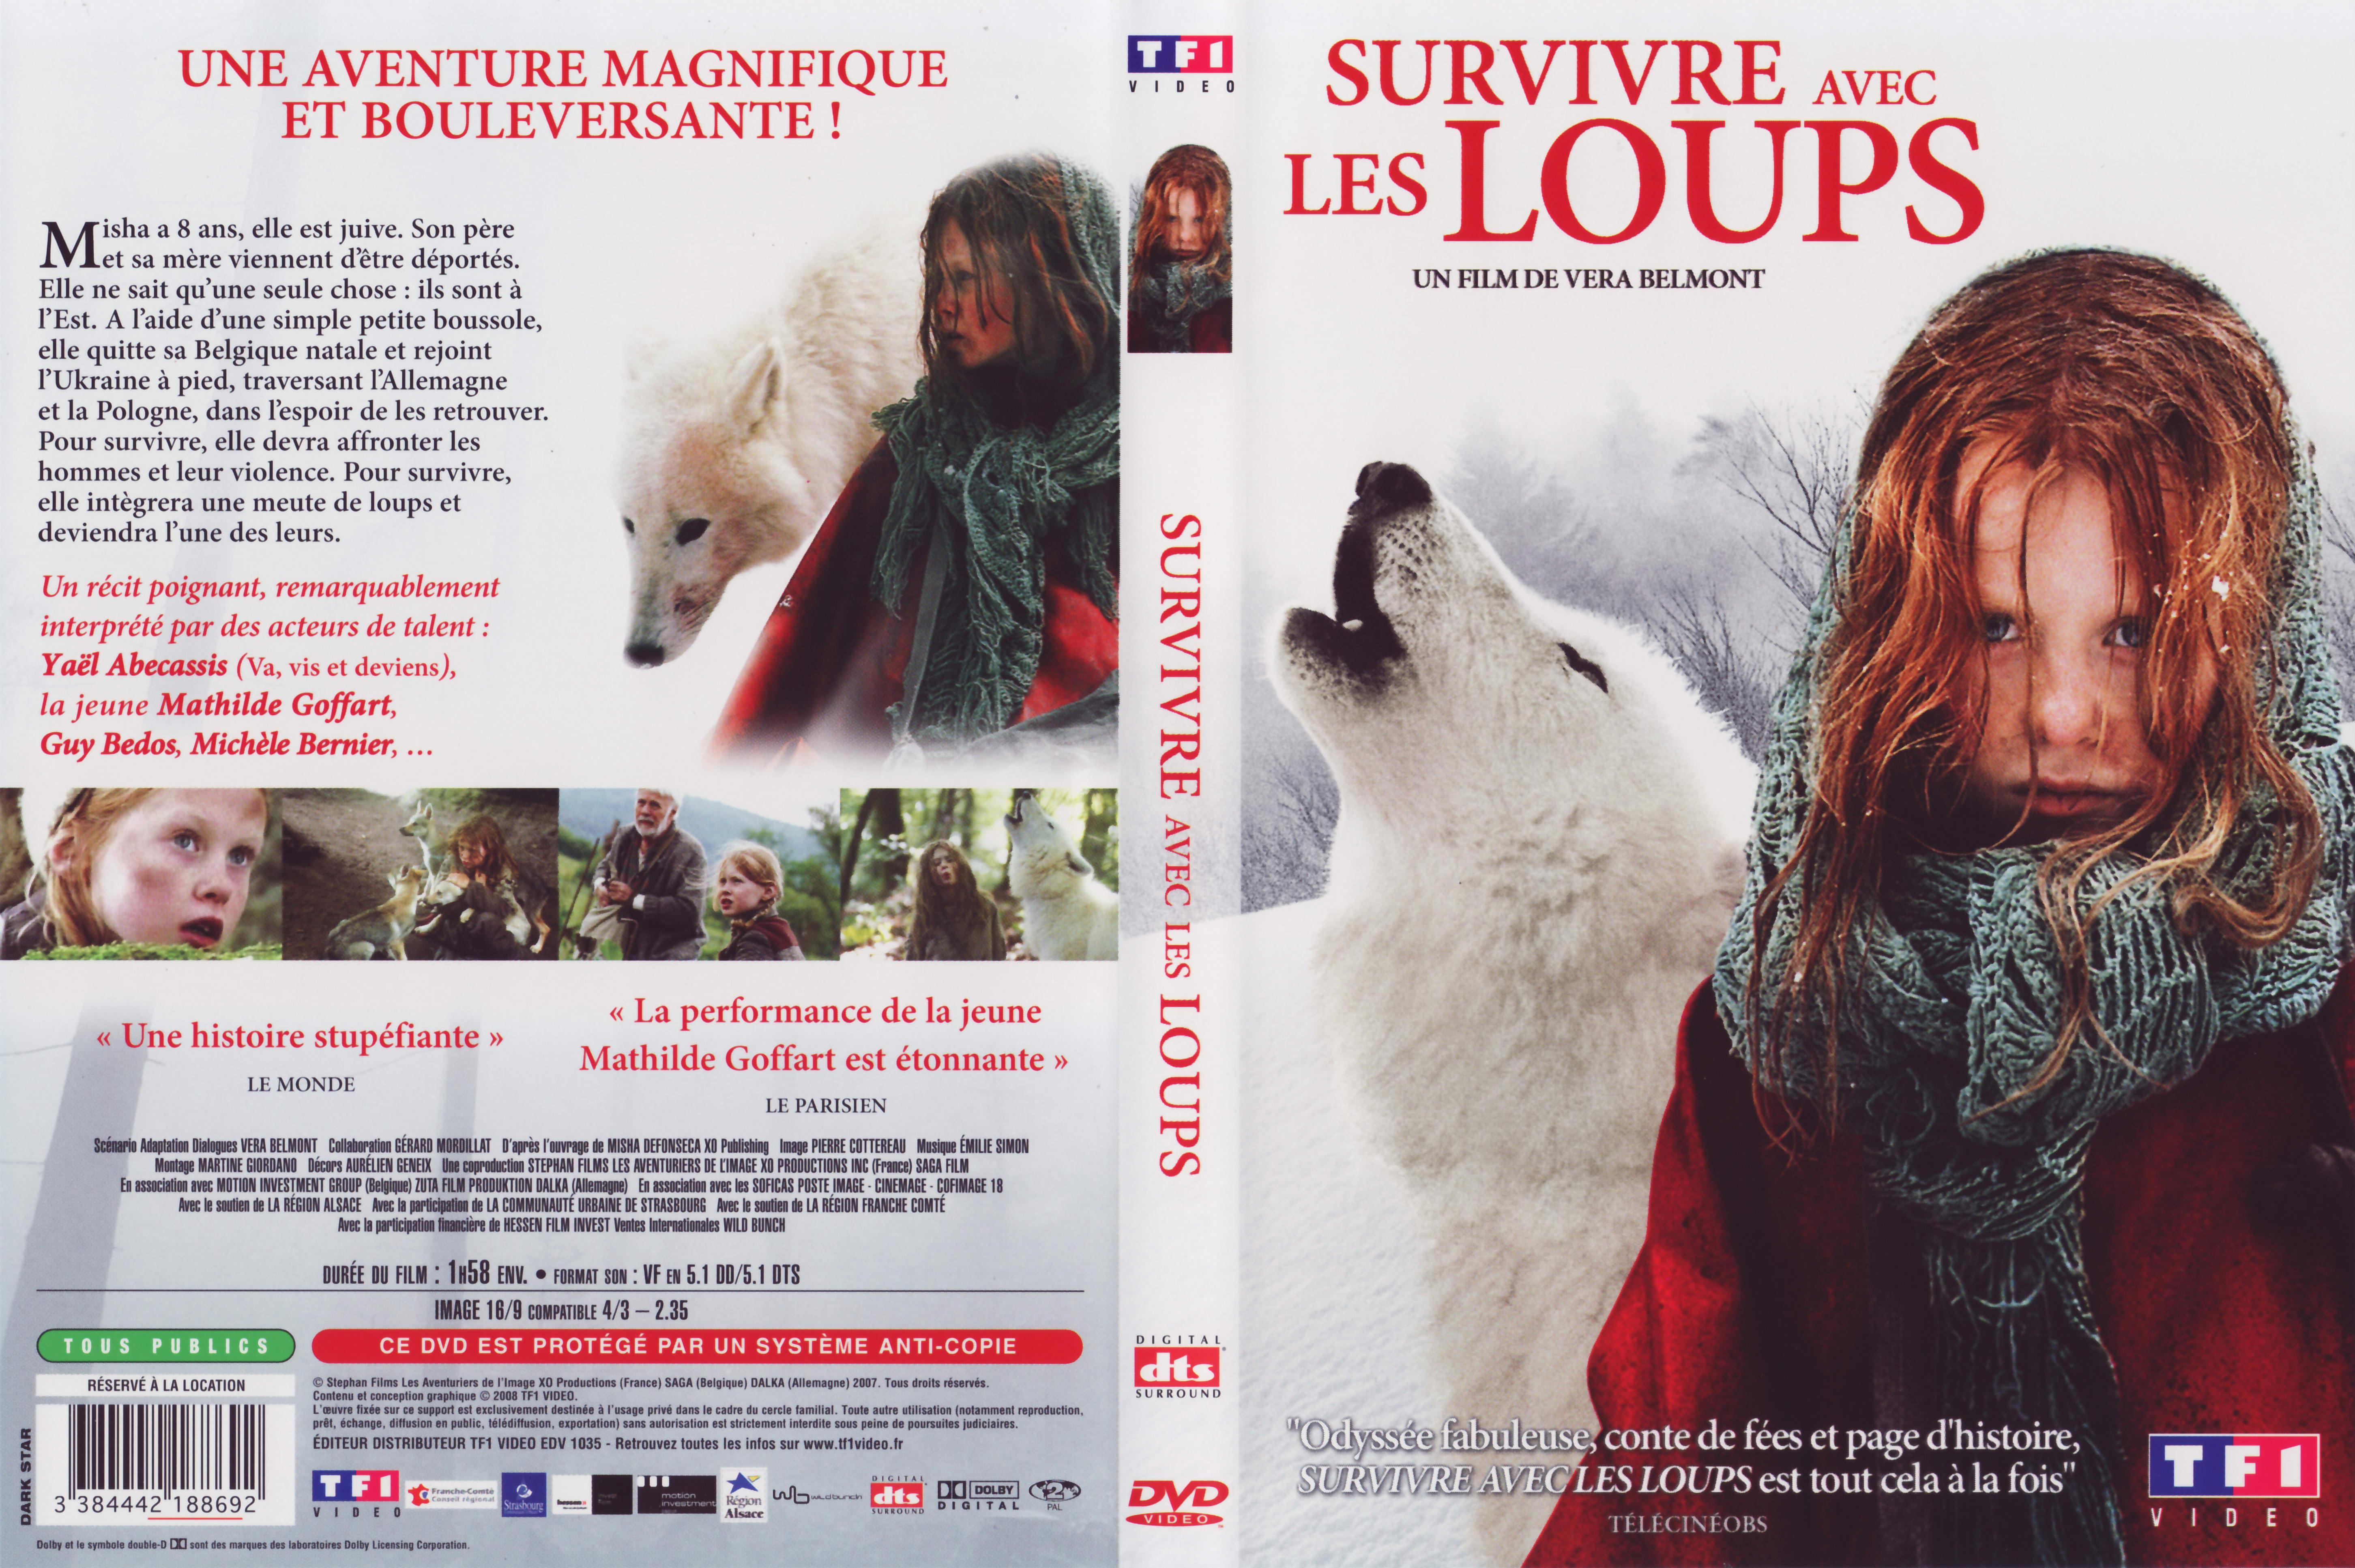 Jaquette DVD Survivre avec les loups v2